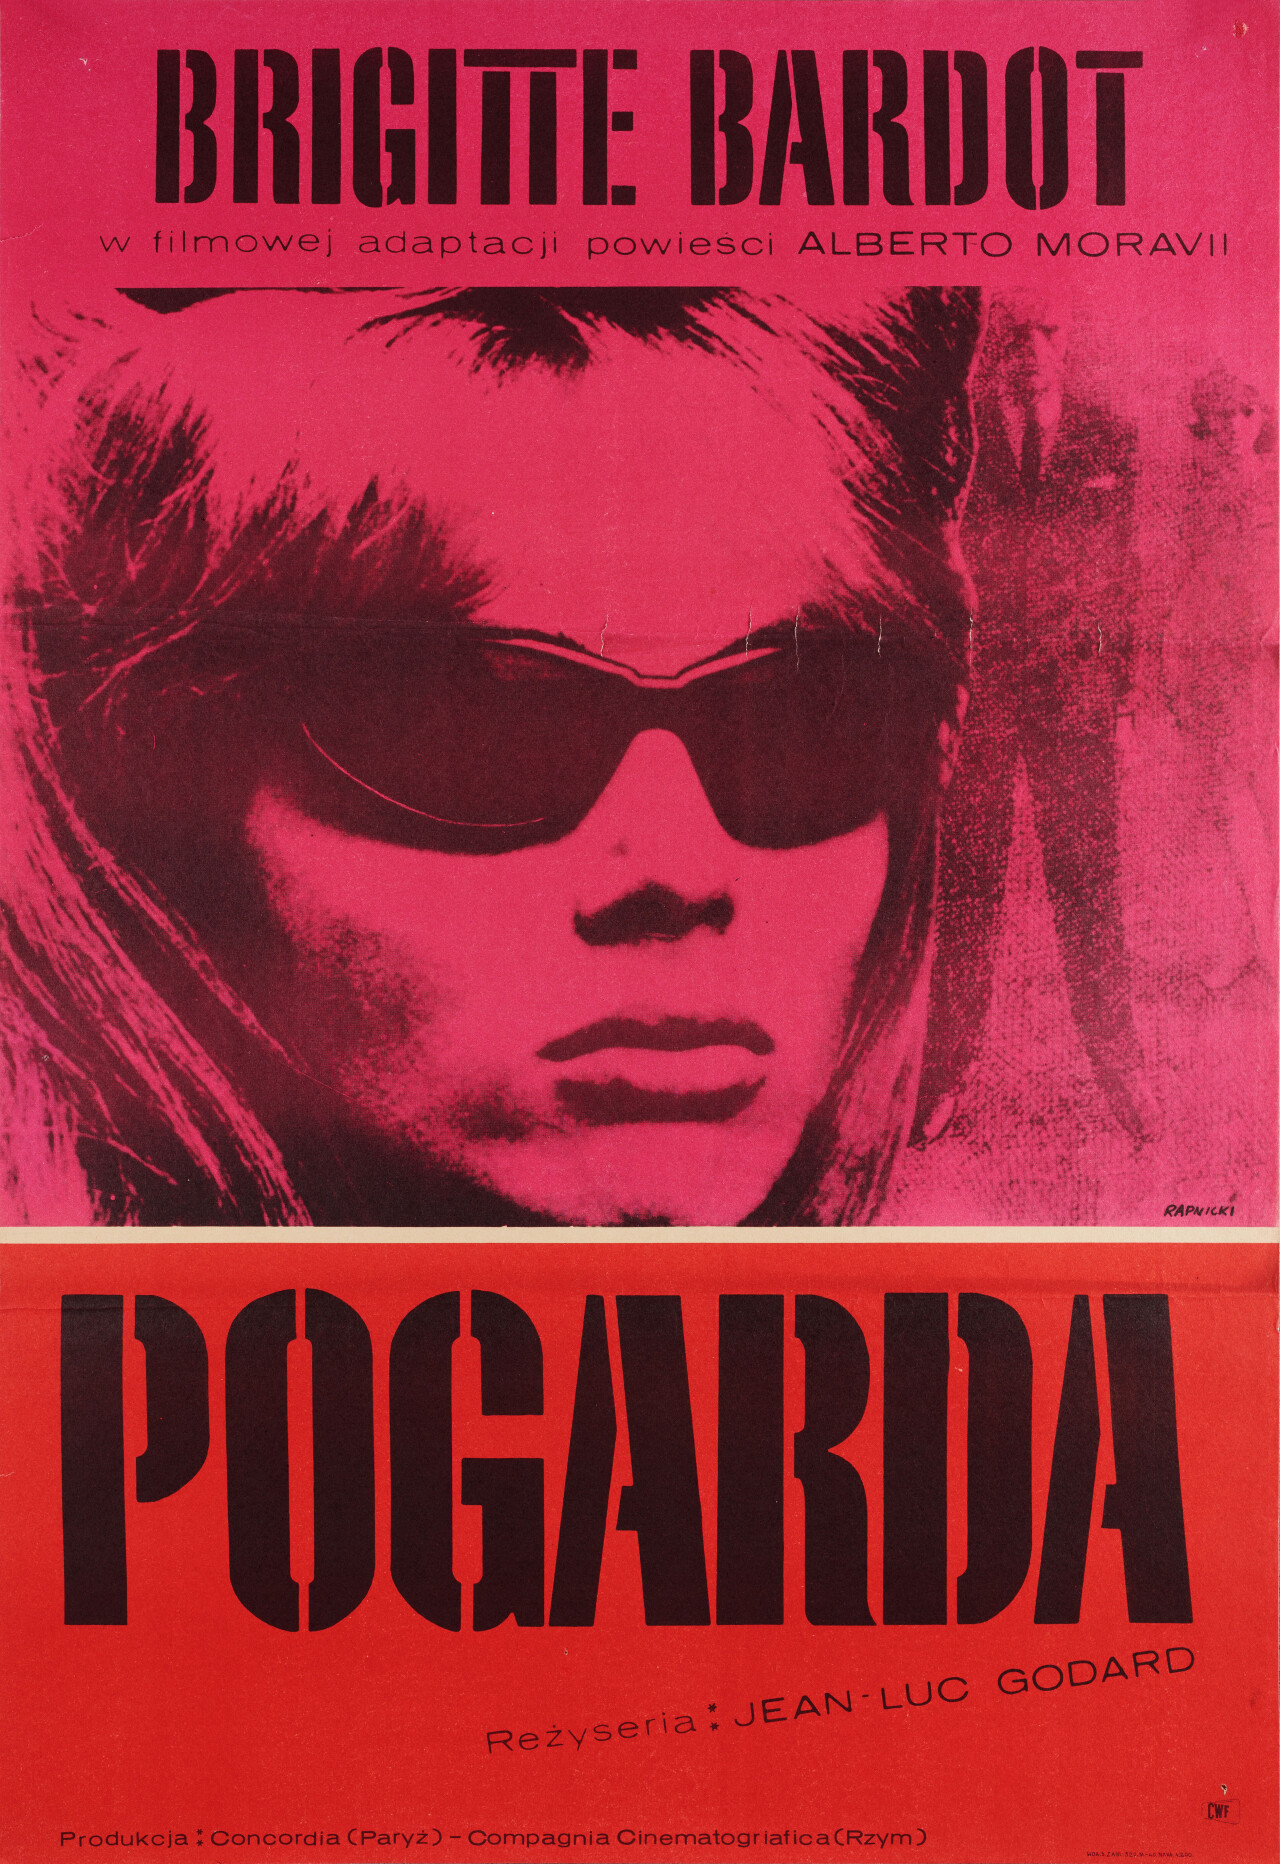 Презрение (Contempt, 1963), режиссёр Жан-Люк Годар, польский постер к фильму, автор Януш Рапницкий (графический дизайн, 1964 год)